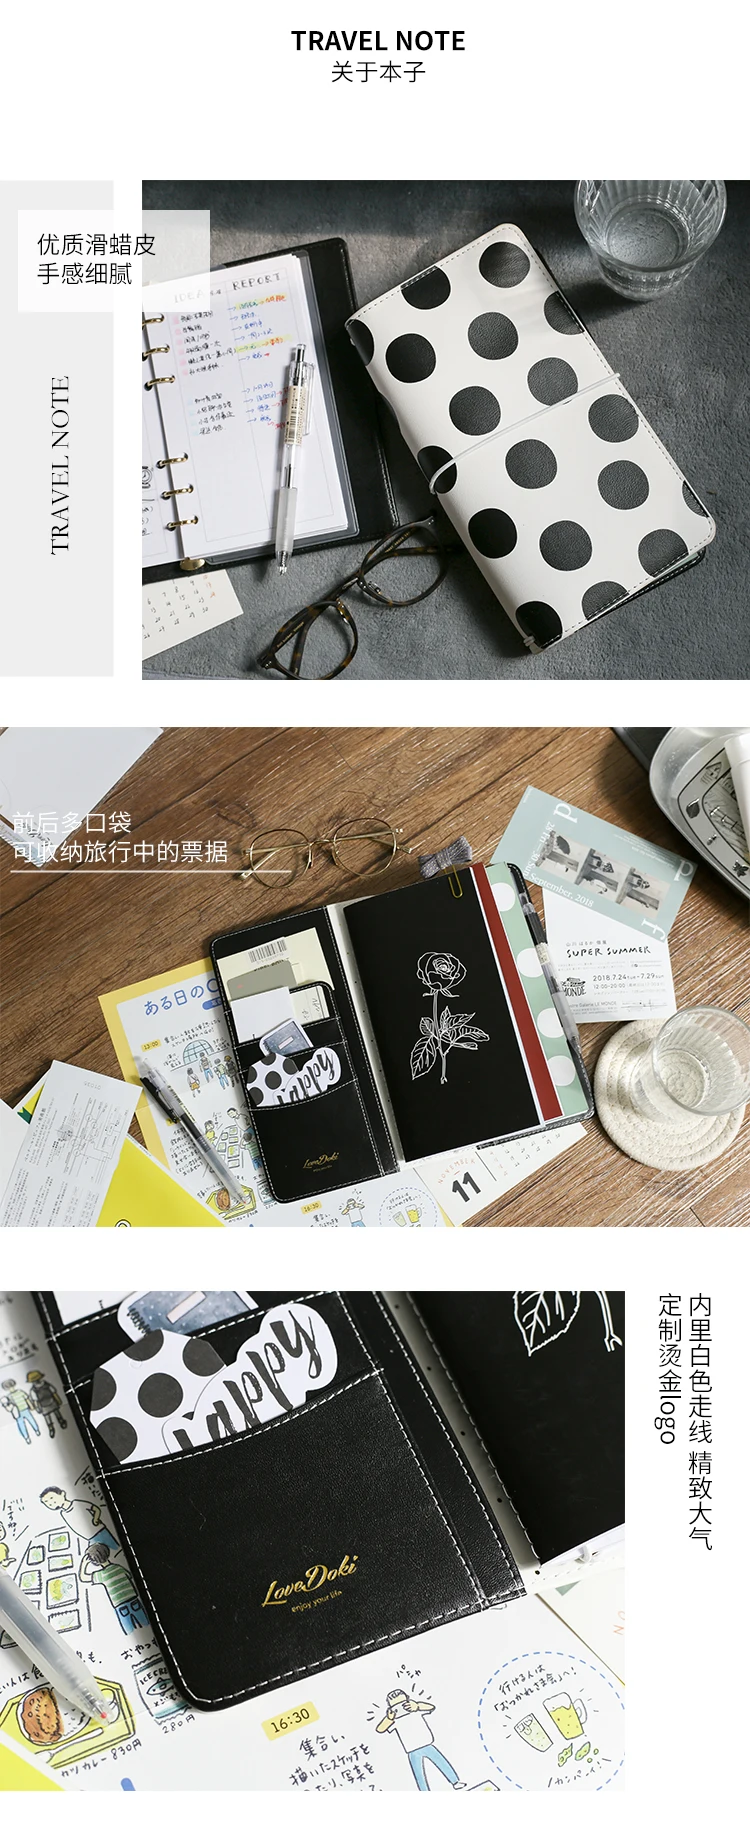 Lovedoki черный белый волновой точки Стандартный Путешествия тетрадь дневник планировщик Дневник Журнал Sketchbook Yiwi